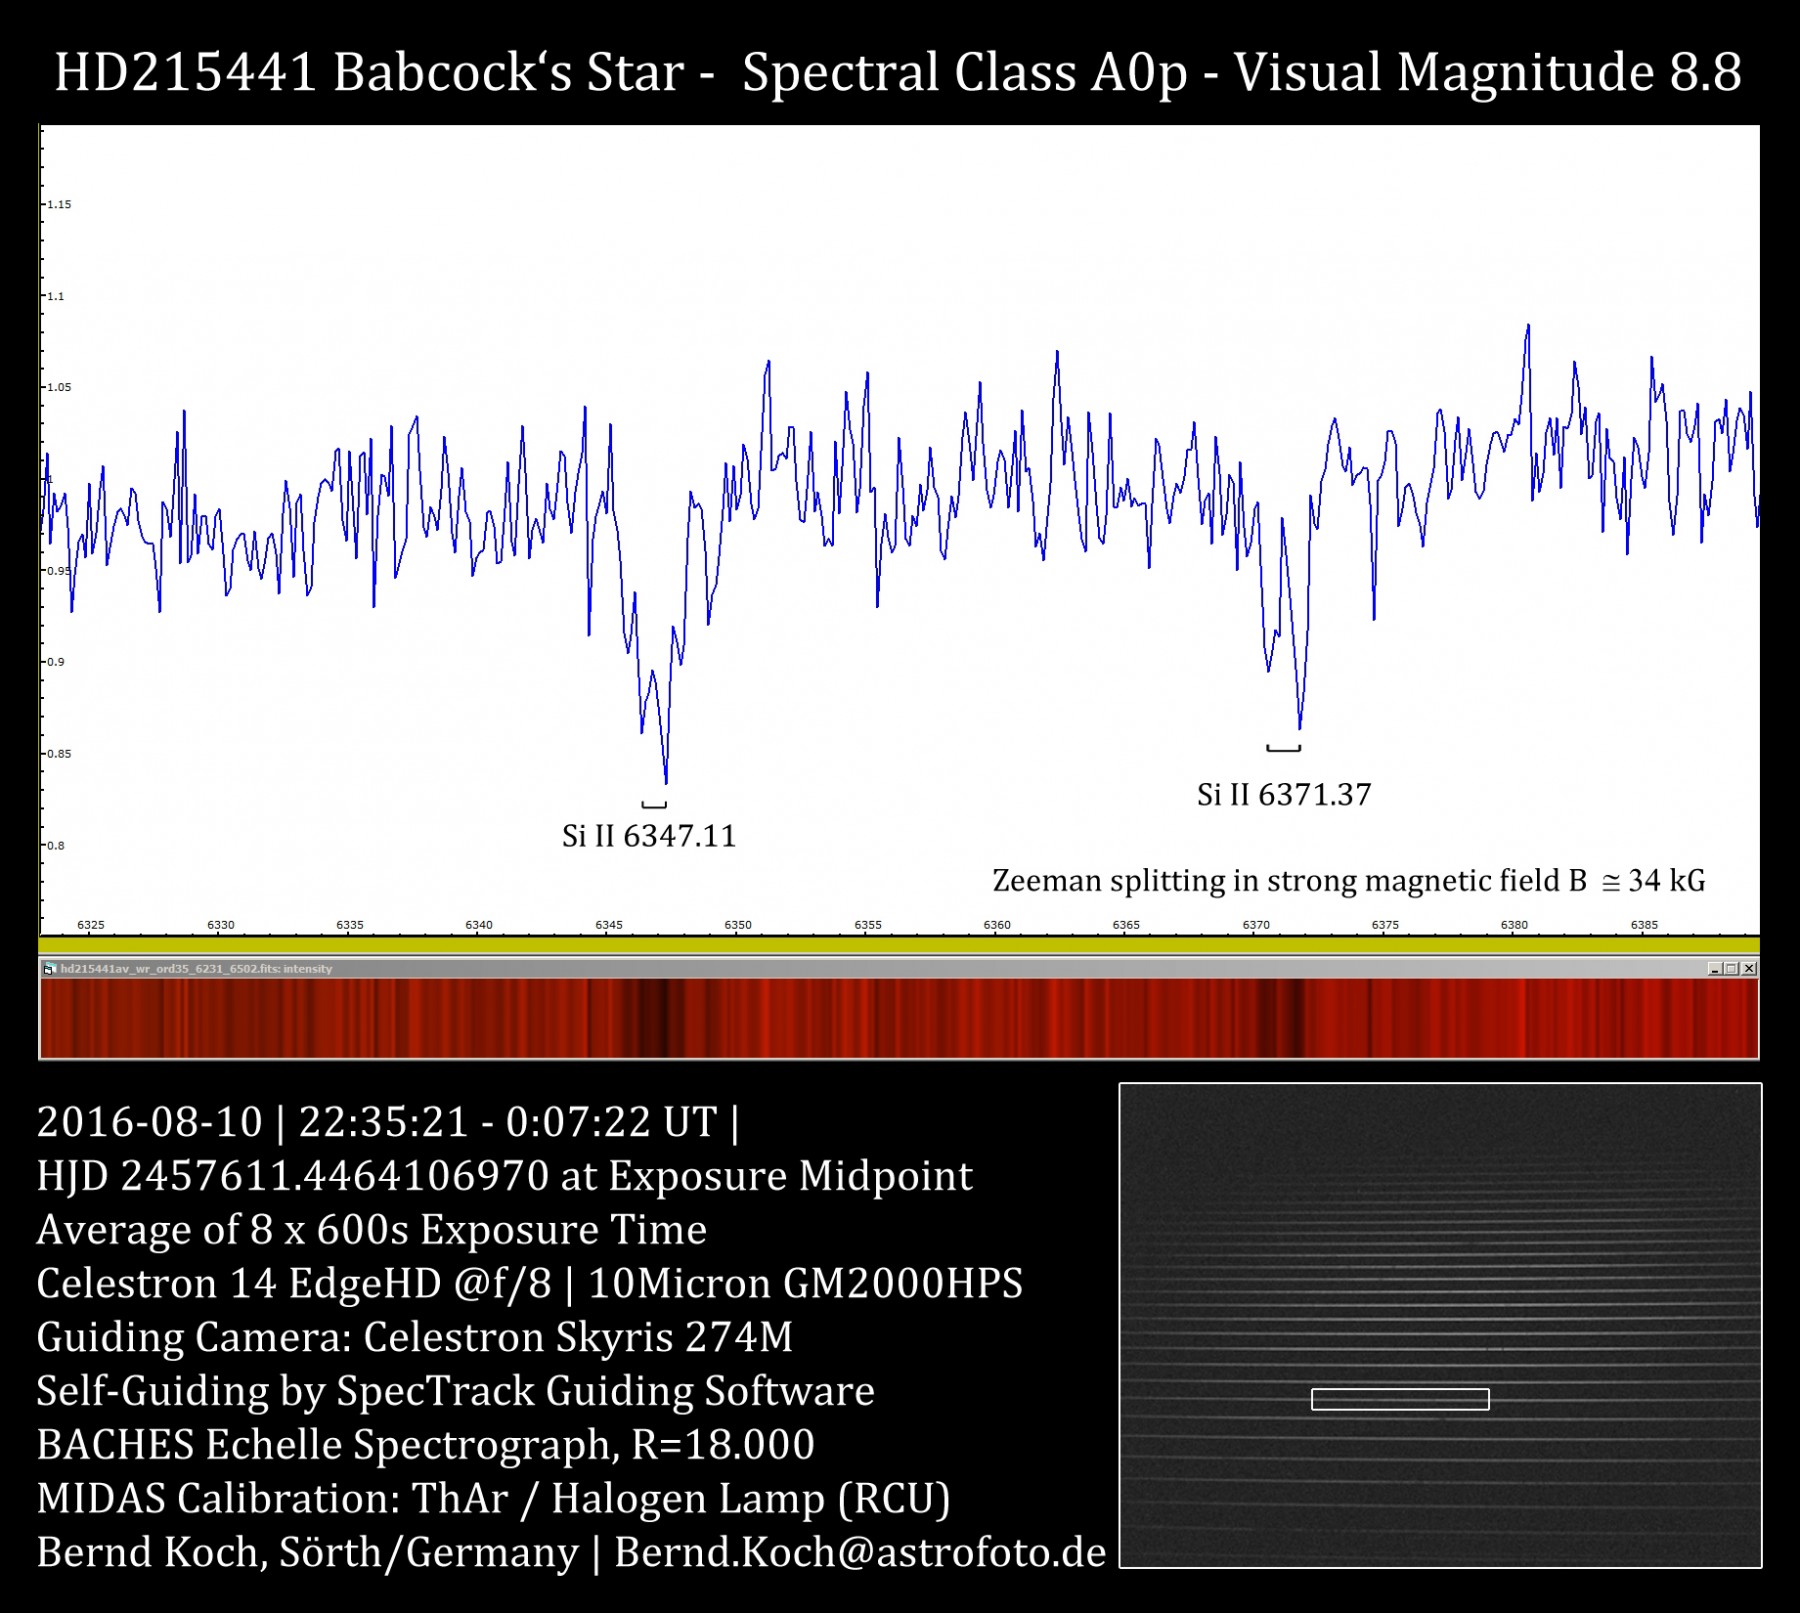 baches-echelle-spectrograph-91d.jpg